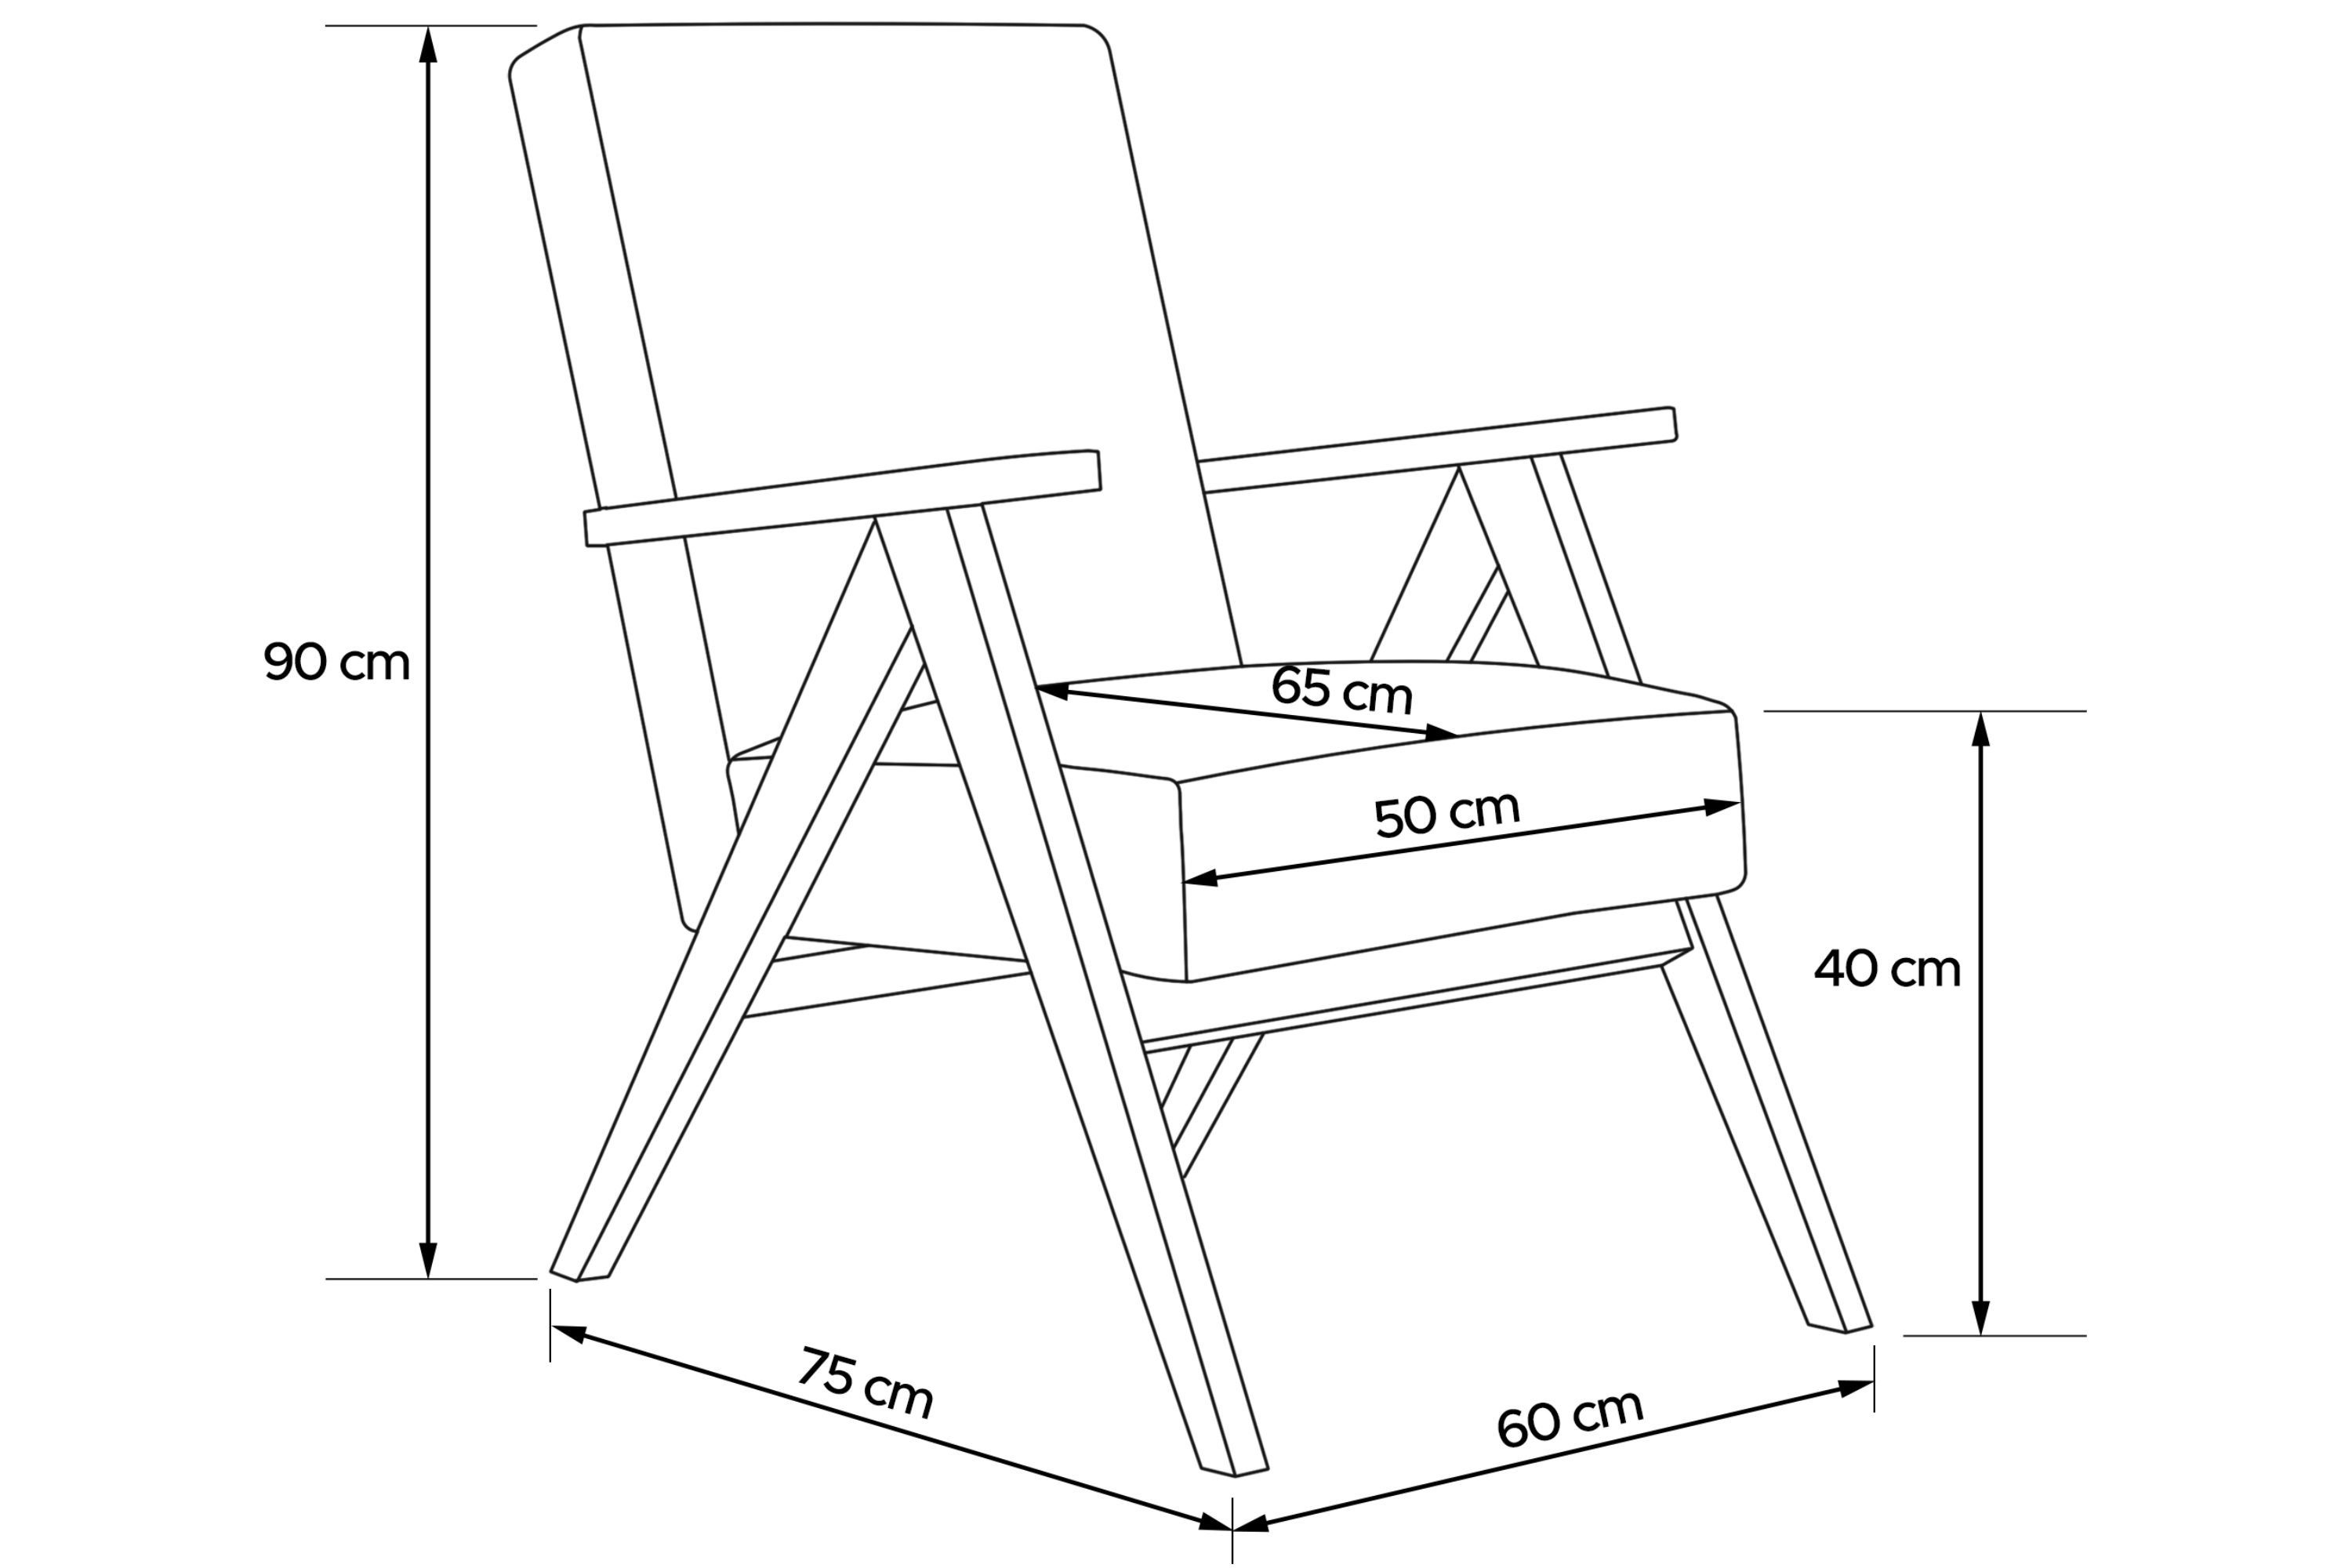 Konsimo Rahmen Rückenlehne Holz, profilierte Sessel, Cocktailsessel aus lackiertem NASET